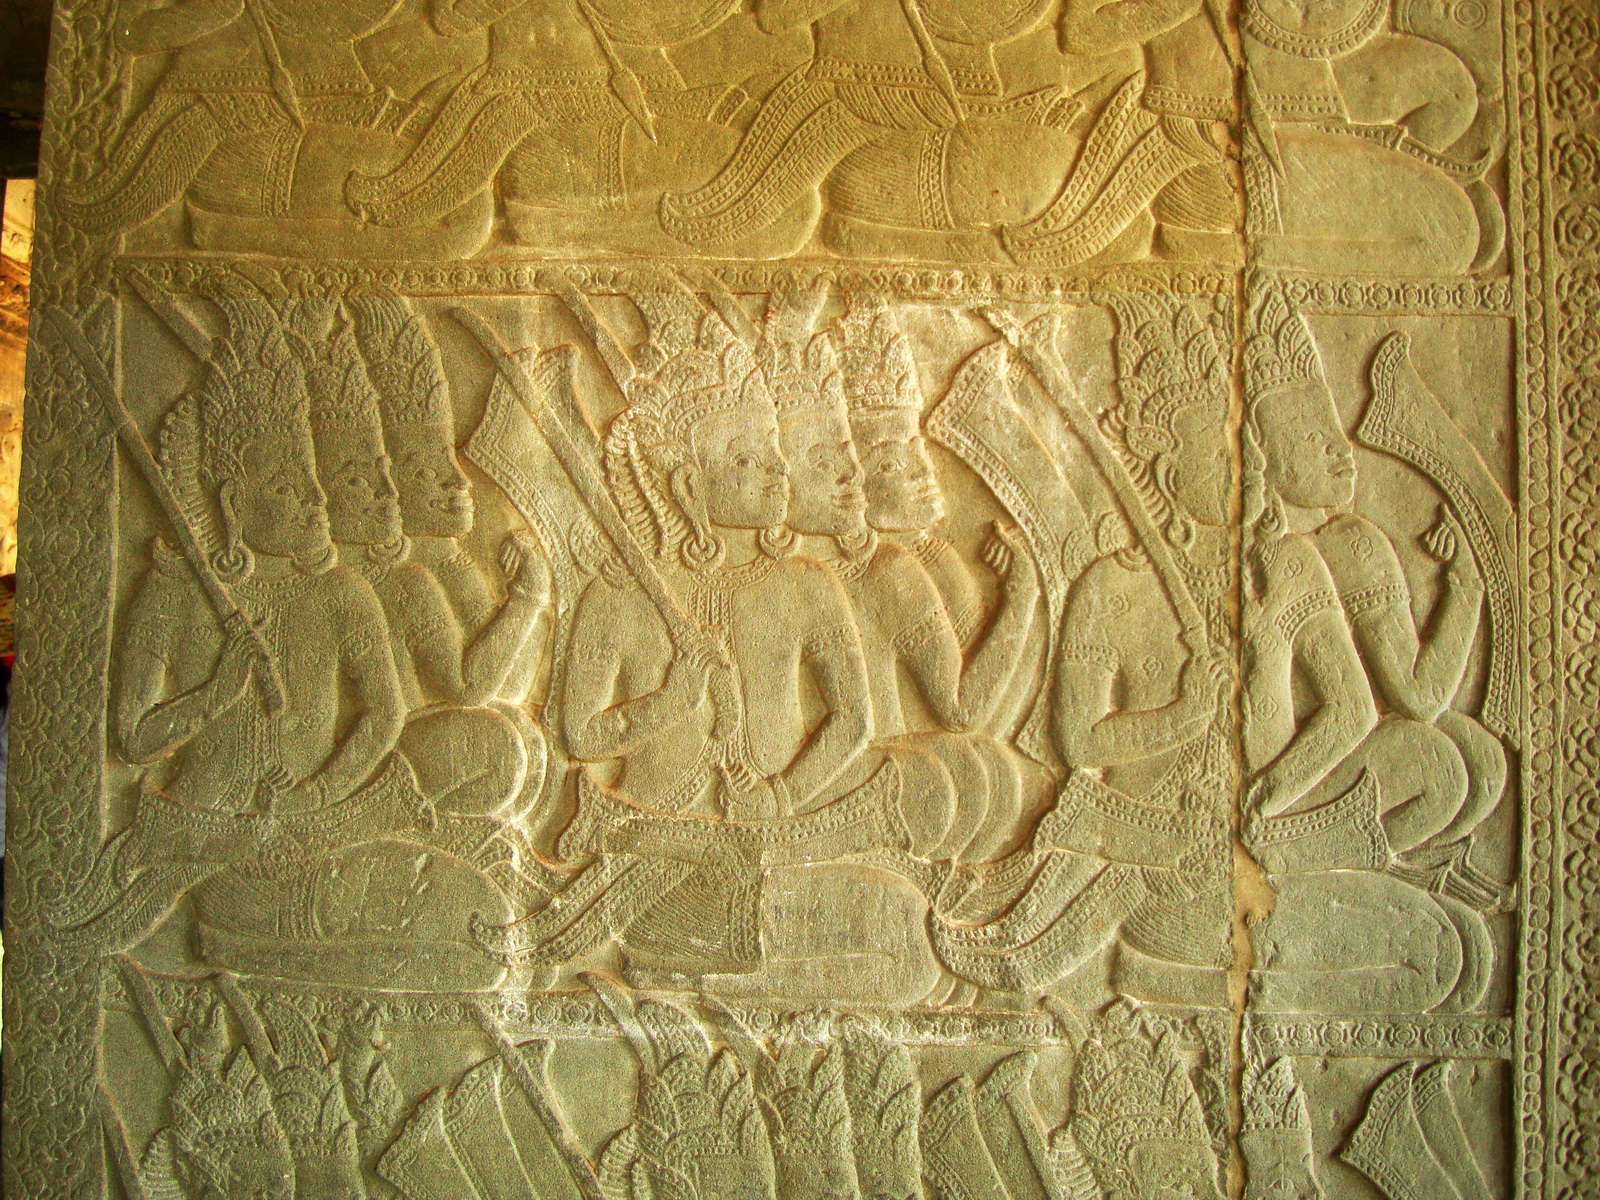 Angkor Wat Bas relief N Gallery W Wing Battle of Devas and Asuras 09